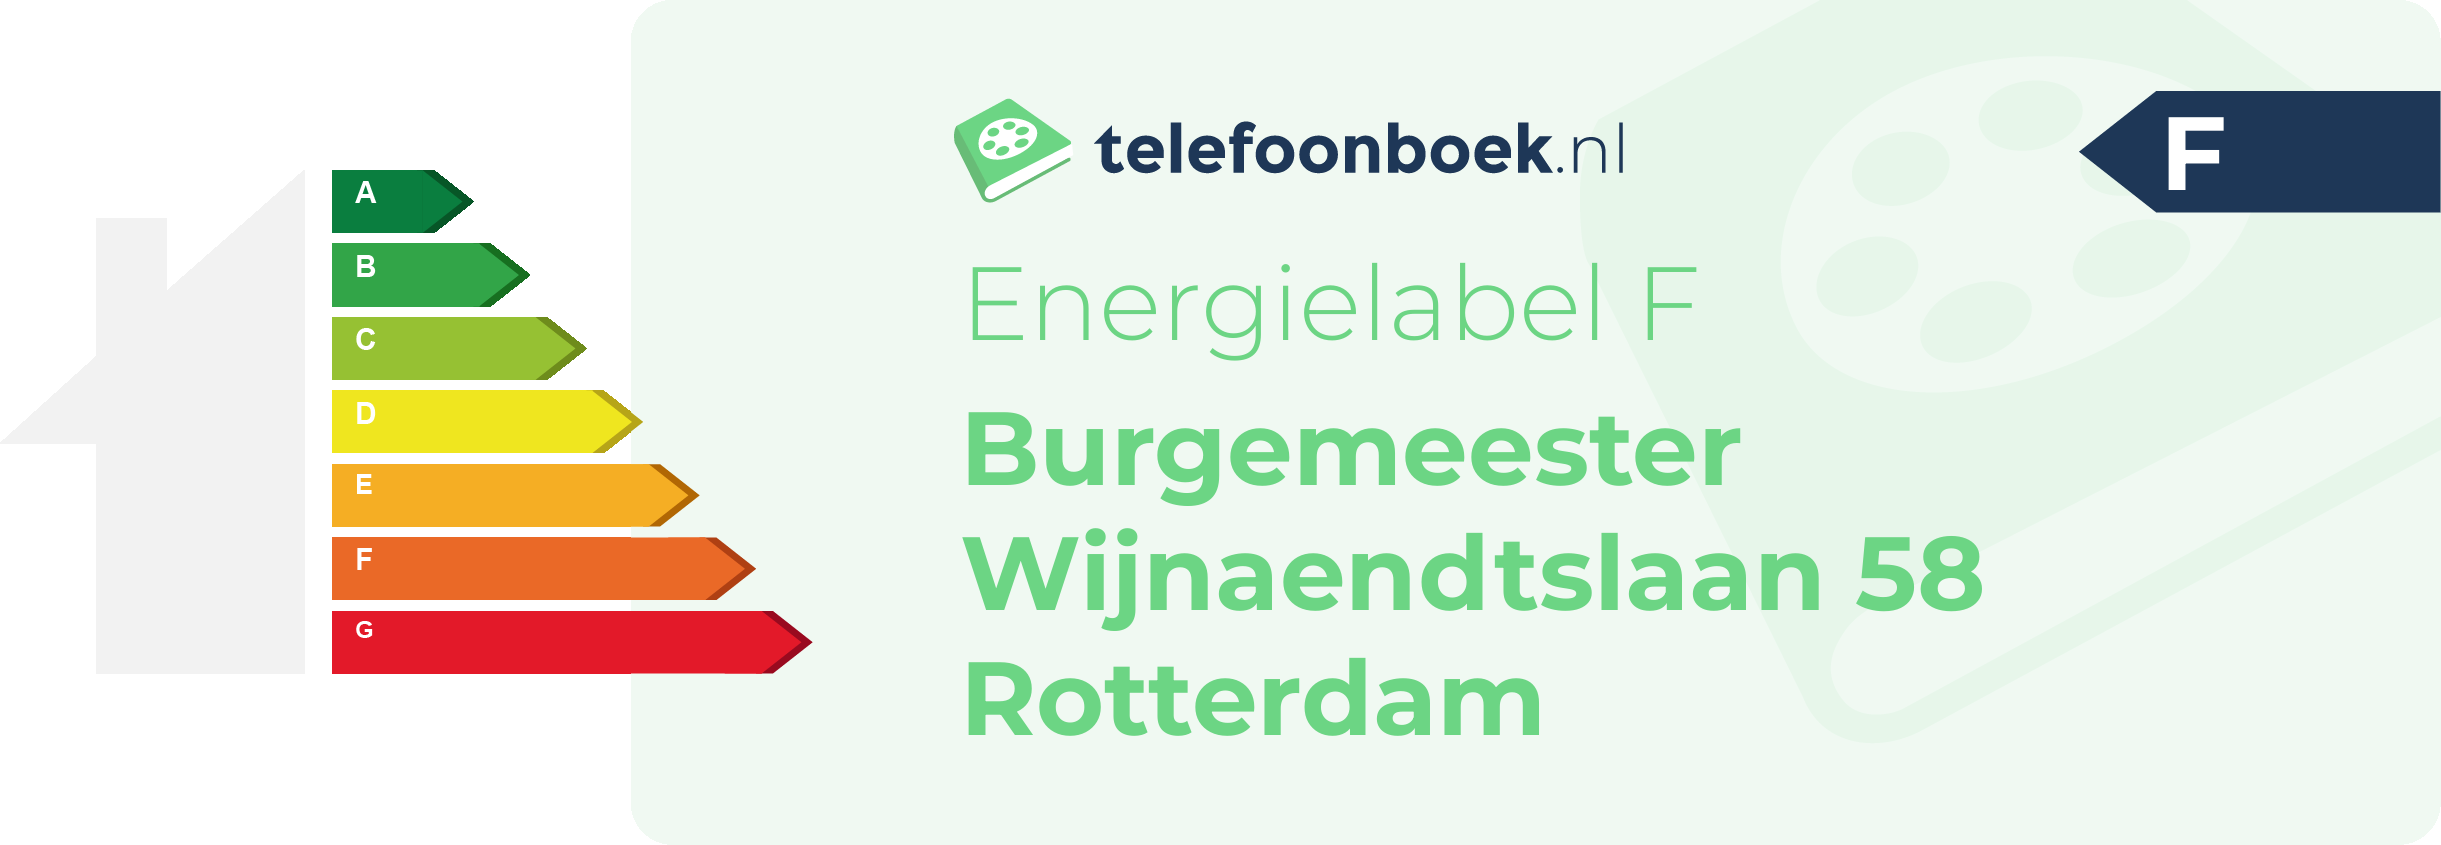 Energielabel Burgemeester Wijnaendtslaan 58 Rotterdam